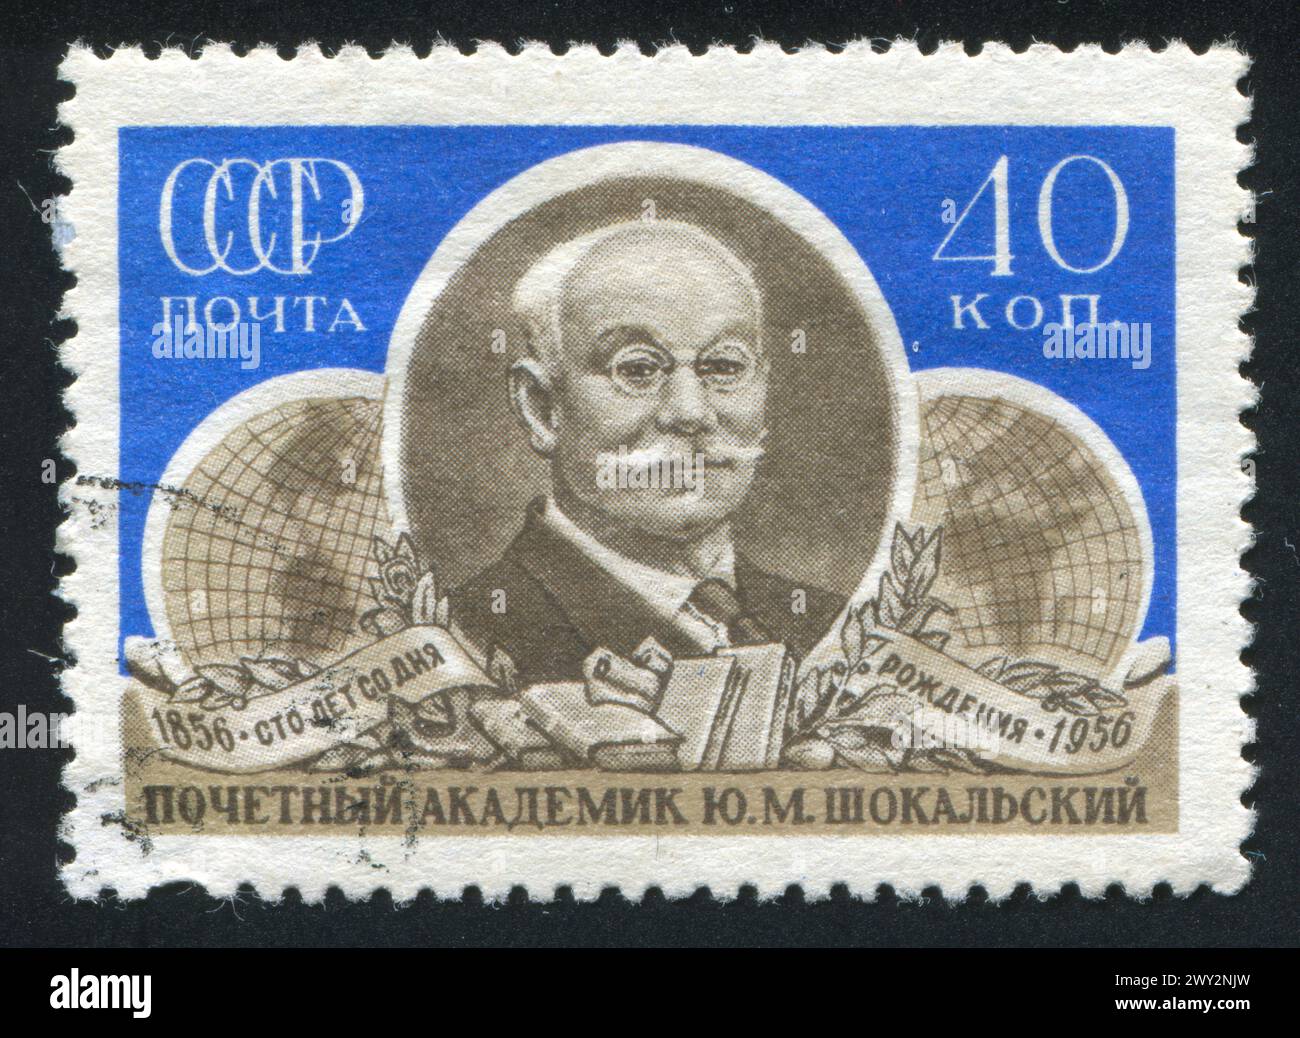 RUSSLAND - CA. 1956: Briefmarke gedruckt von Russland, zeigt Yuli Shokalski, Ozeanographen und Geodäten, ca. 1956 Stockfoto